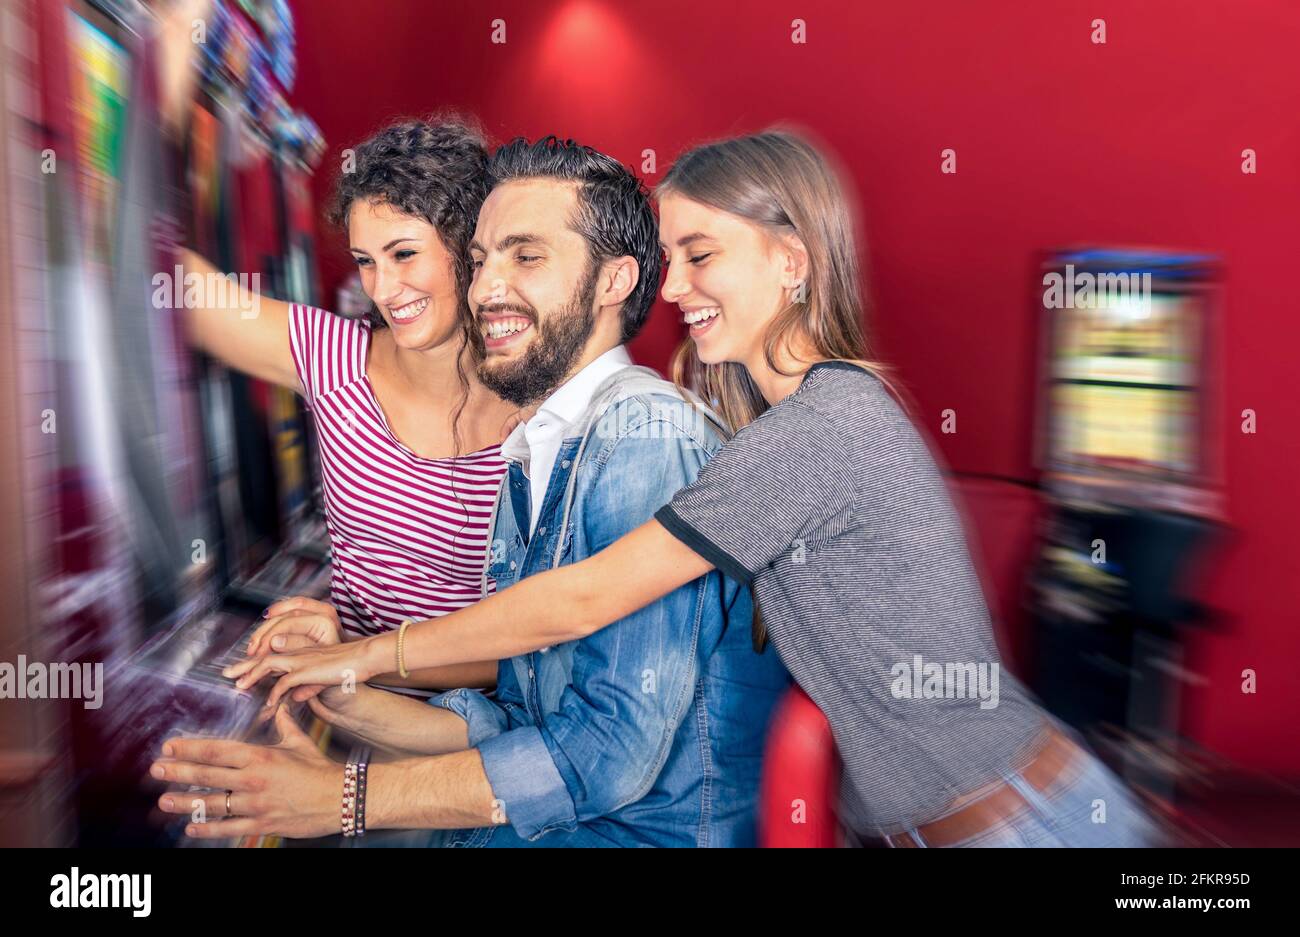 Glückliche junge Freunde, die zusammen mit Spielautomaten Spaß haben - Glücksspiel-Konzept mit Menschen spielen an Bargeld automatische Geräte in Modernes Casino und Resort Stockfoto